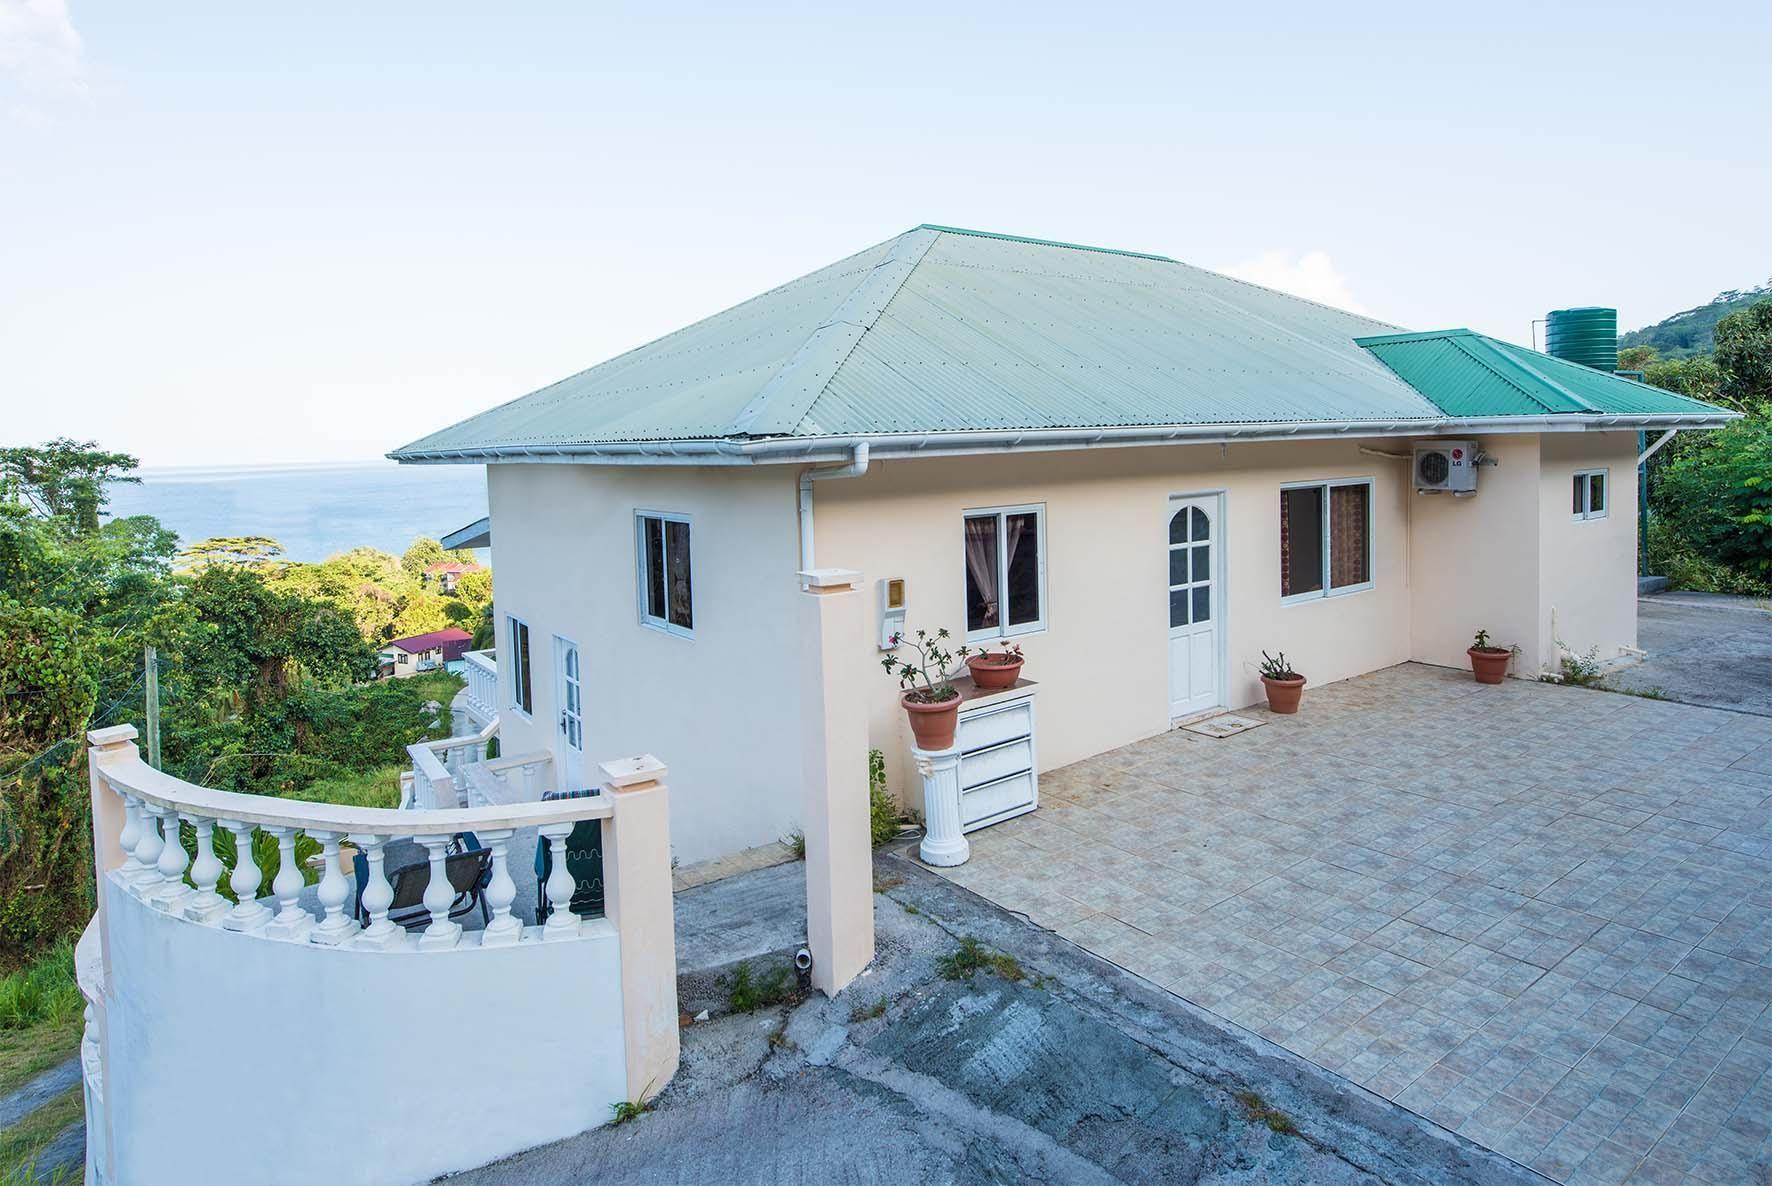 Dieses Haus in der Nähe vom Strand, bietet ei Ferienhaus in Afrika